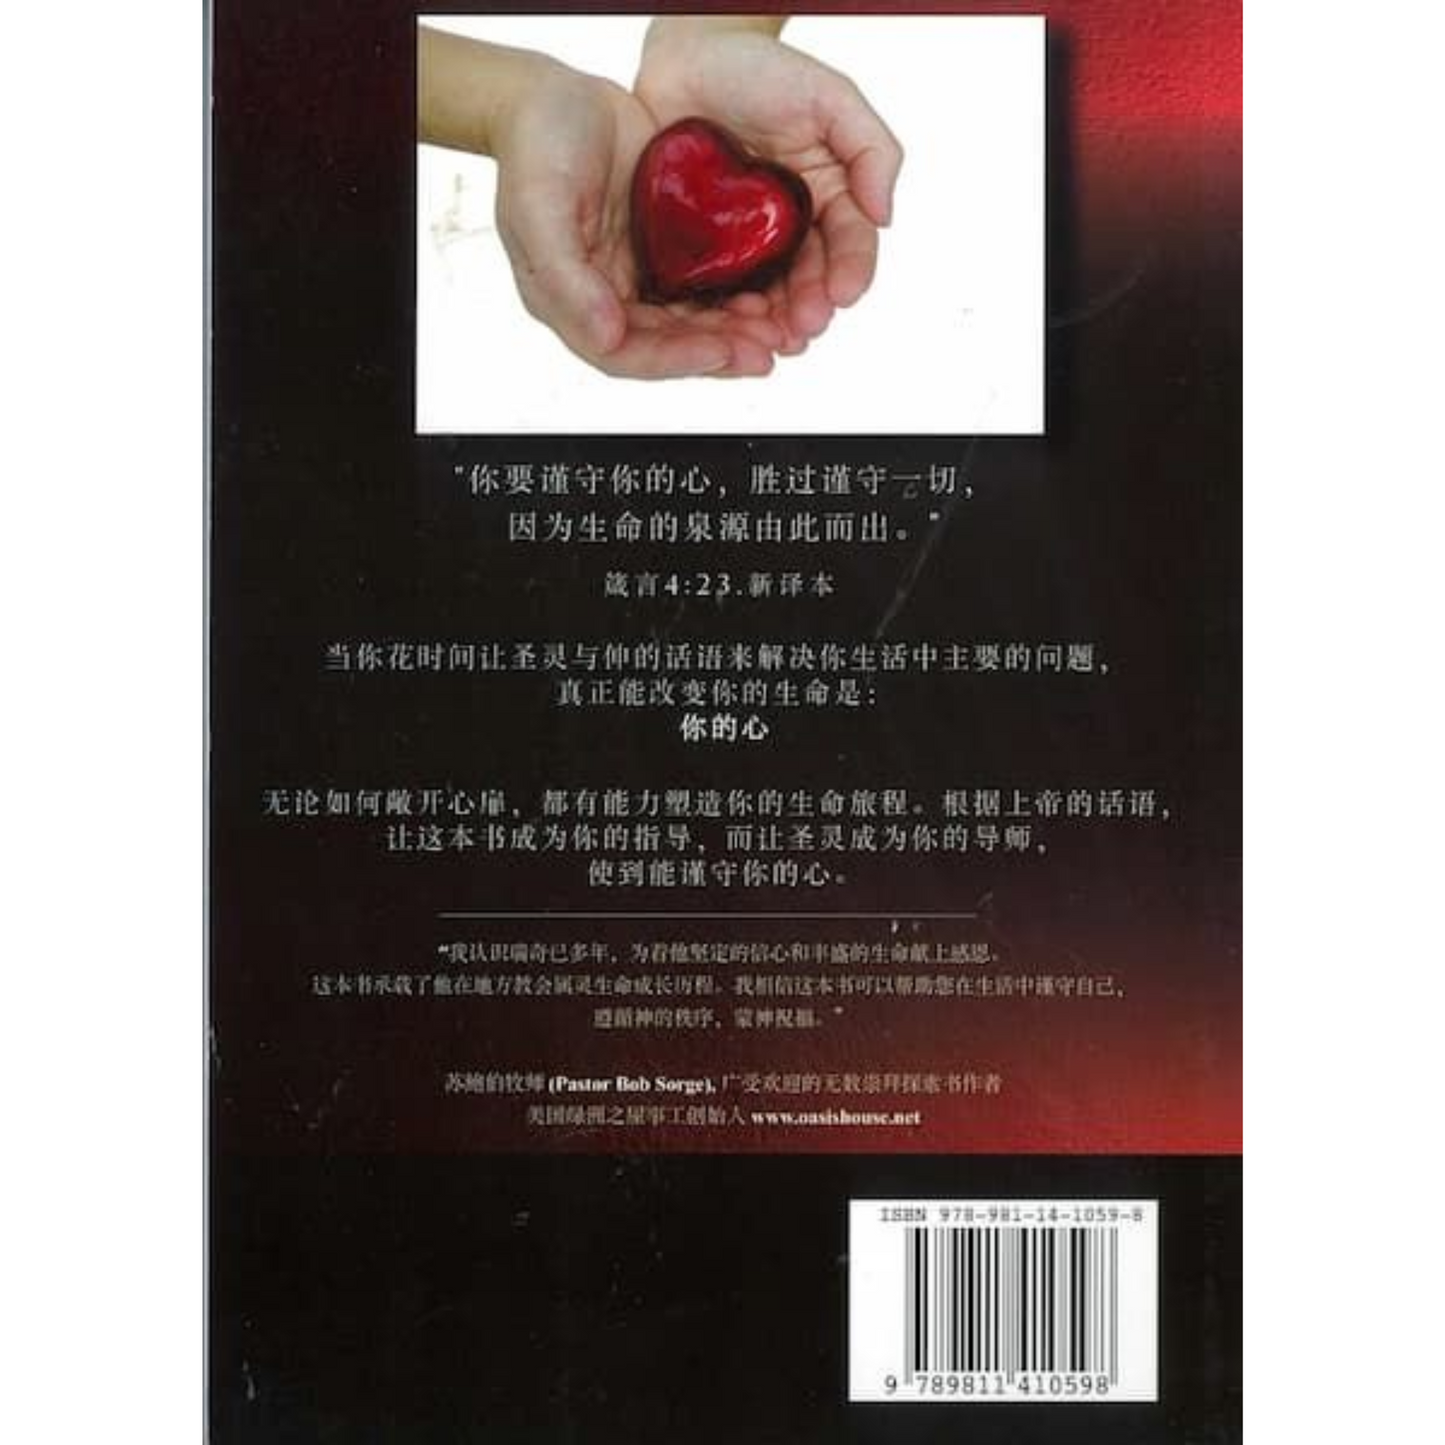 未谨守的心 (The Unguarded Heart - Chinese Edition)